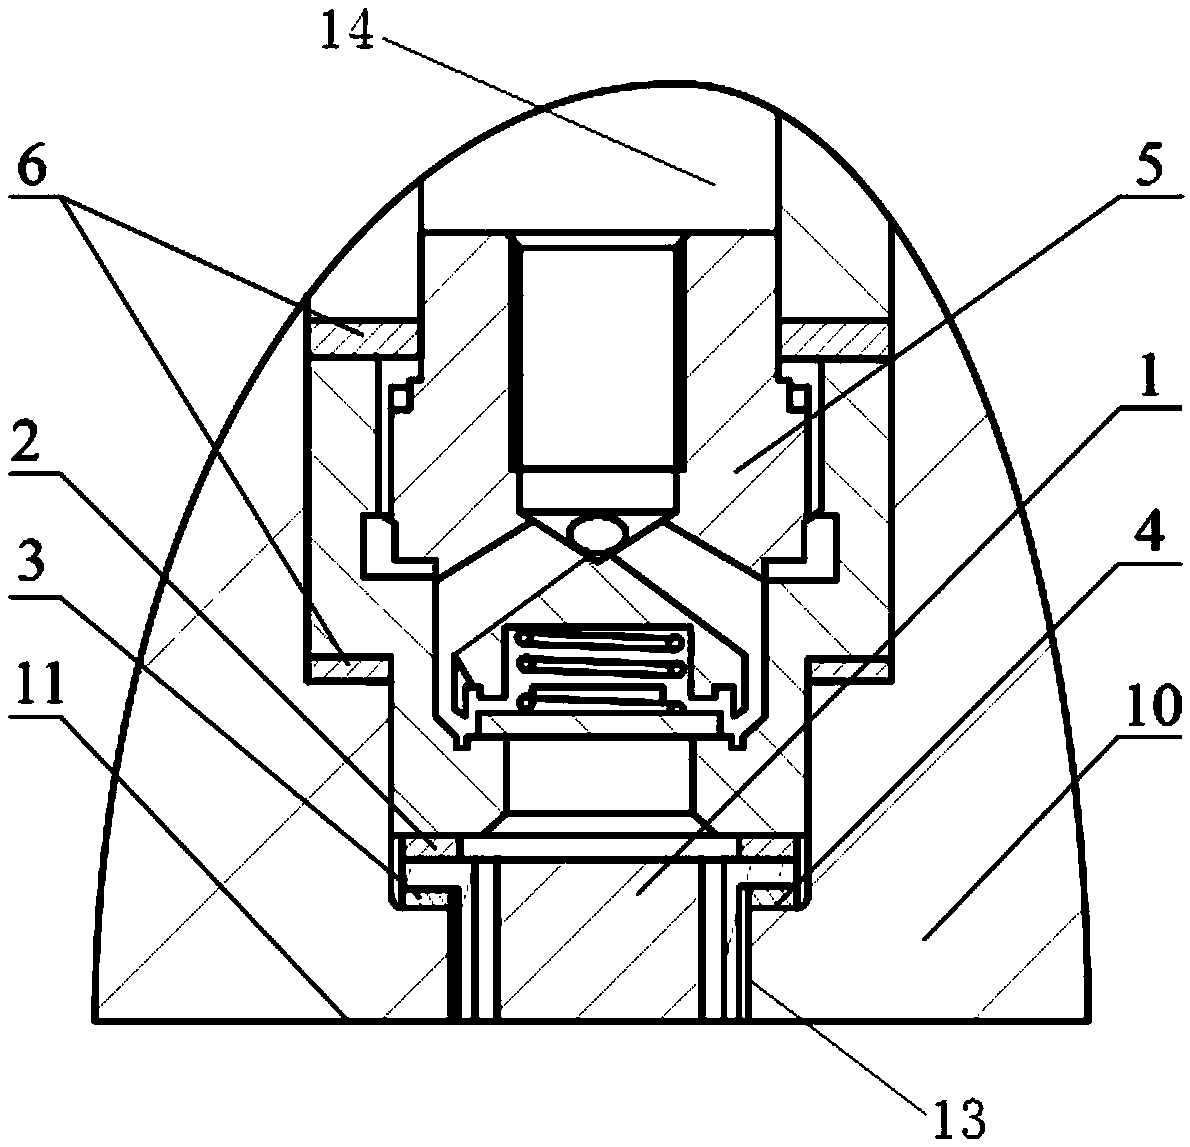 High-pressure diaphragm compressor, cylinder cover of high-pressure diaphragm compressor, and machining method of cylinder cover